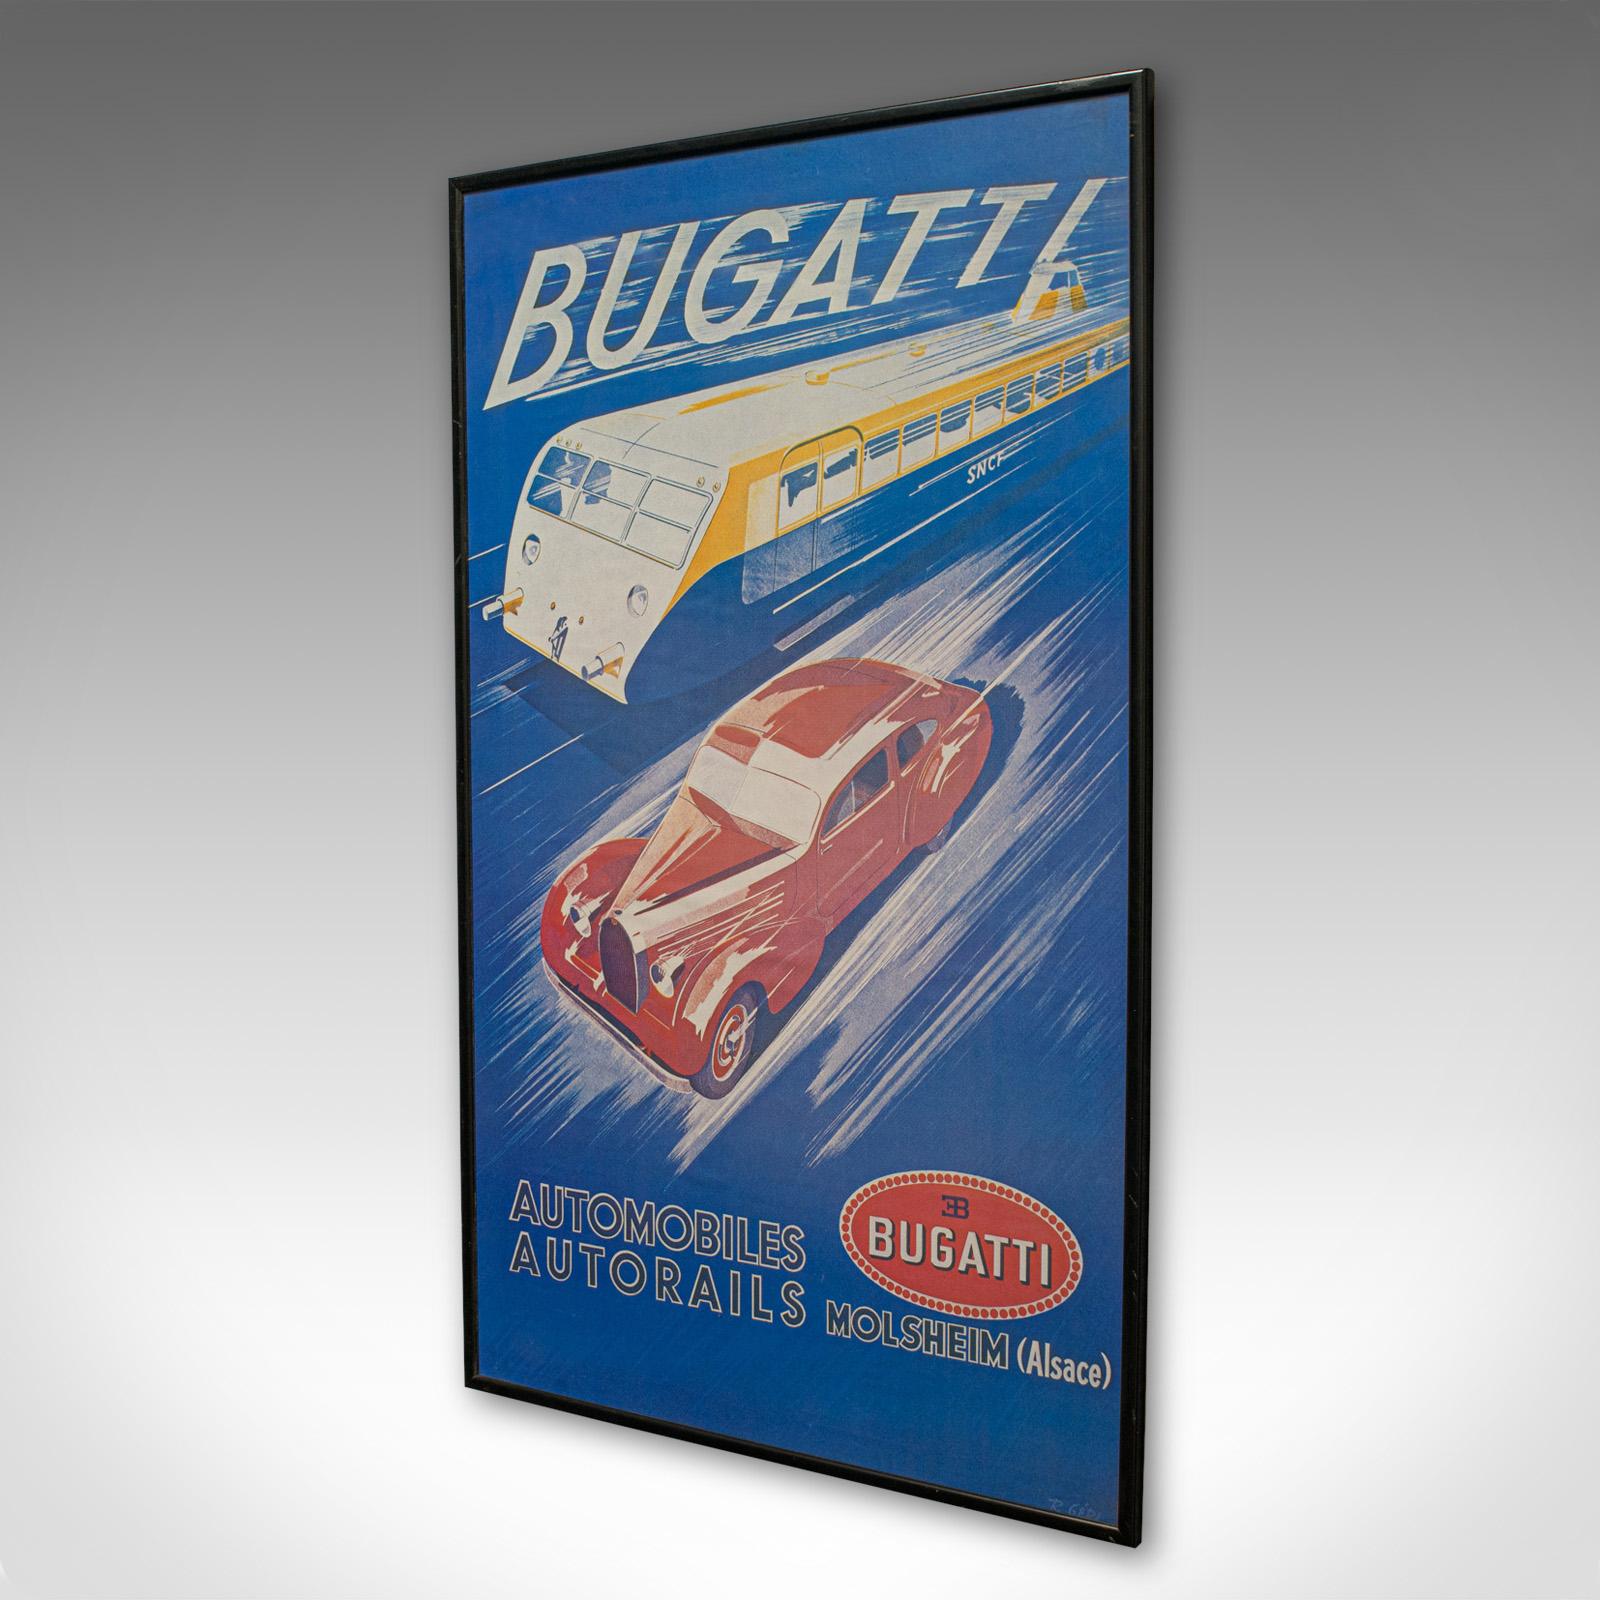 bugatti advertisement